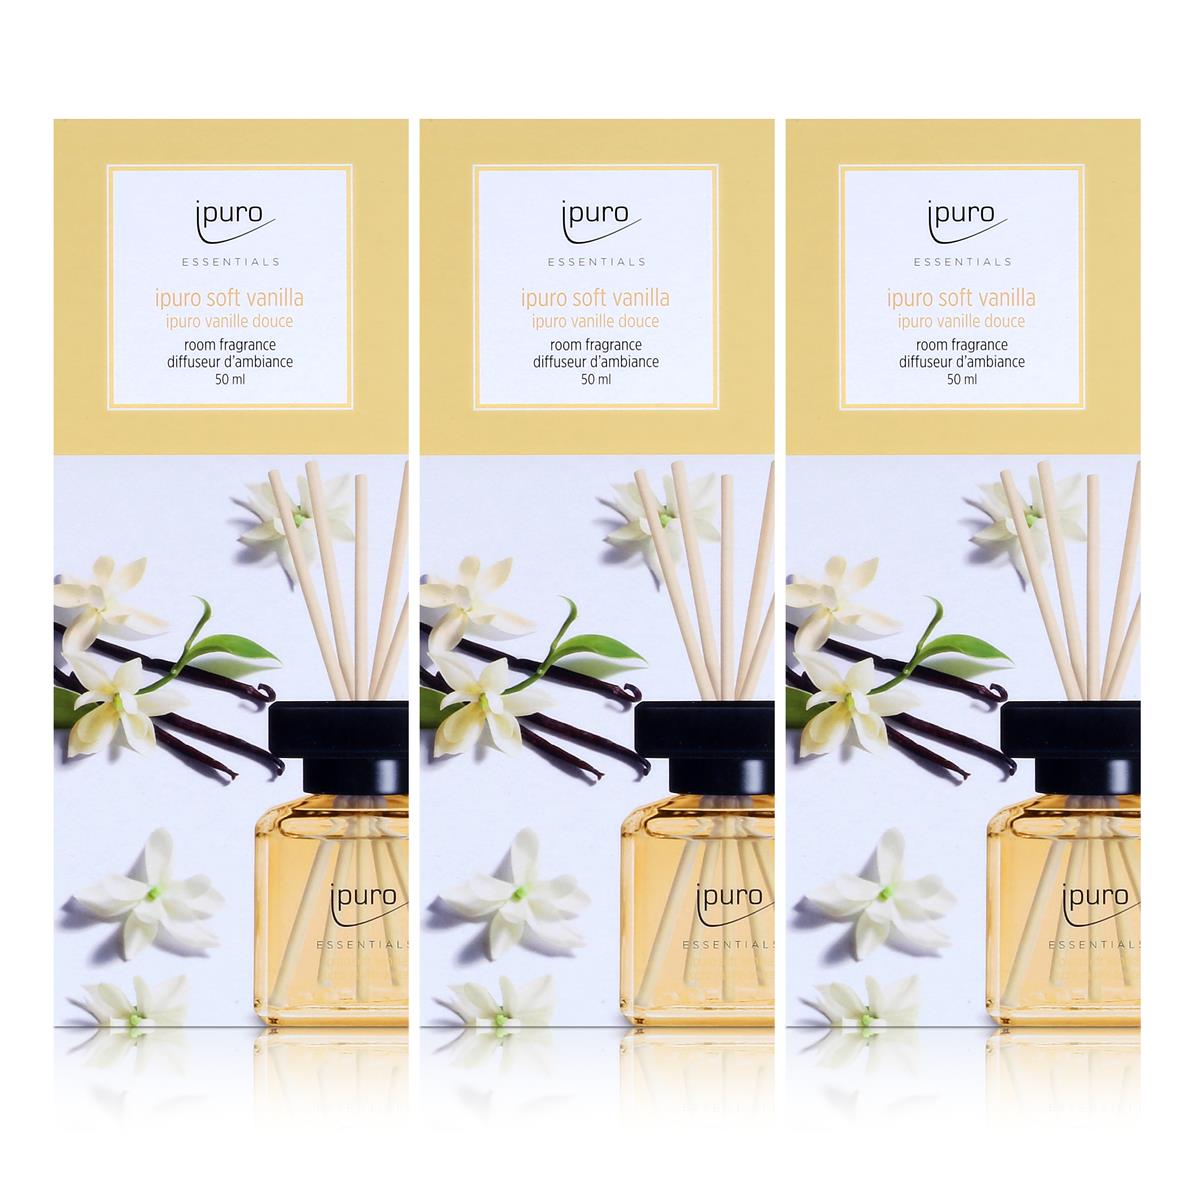 Essentials by Ipuro soft vanilla 50ml